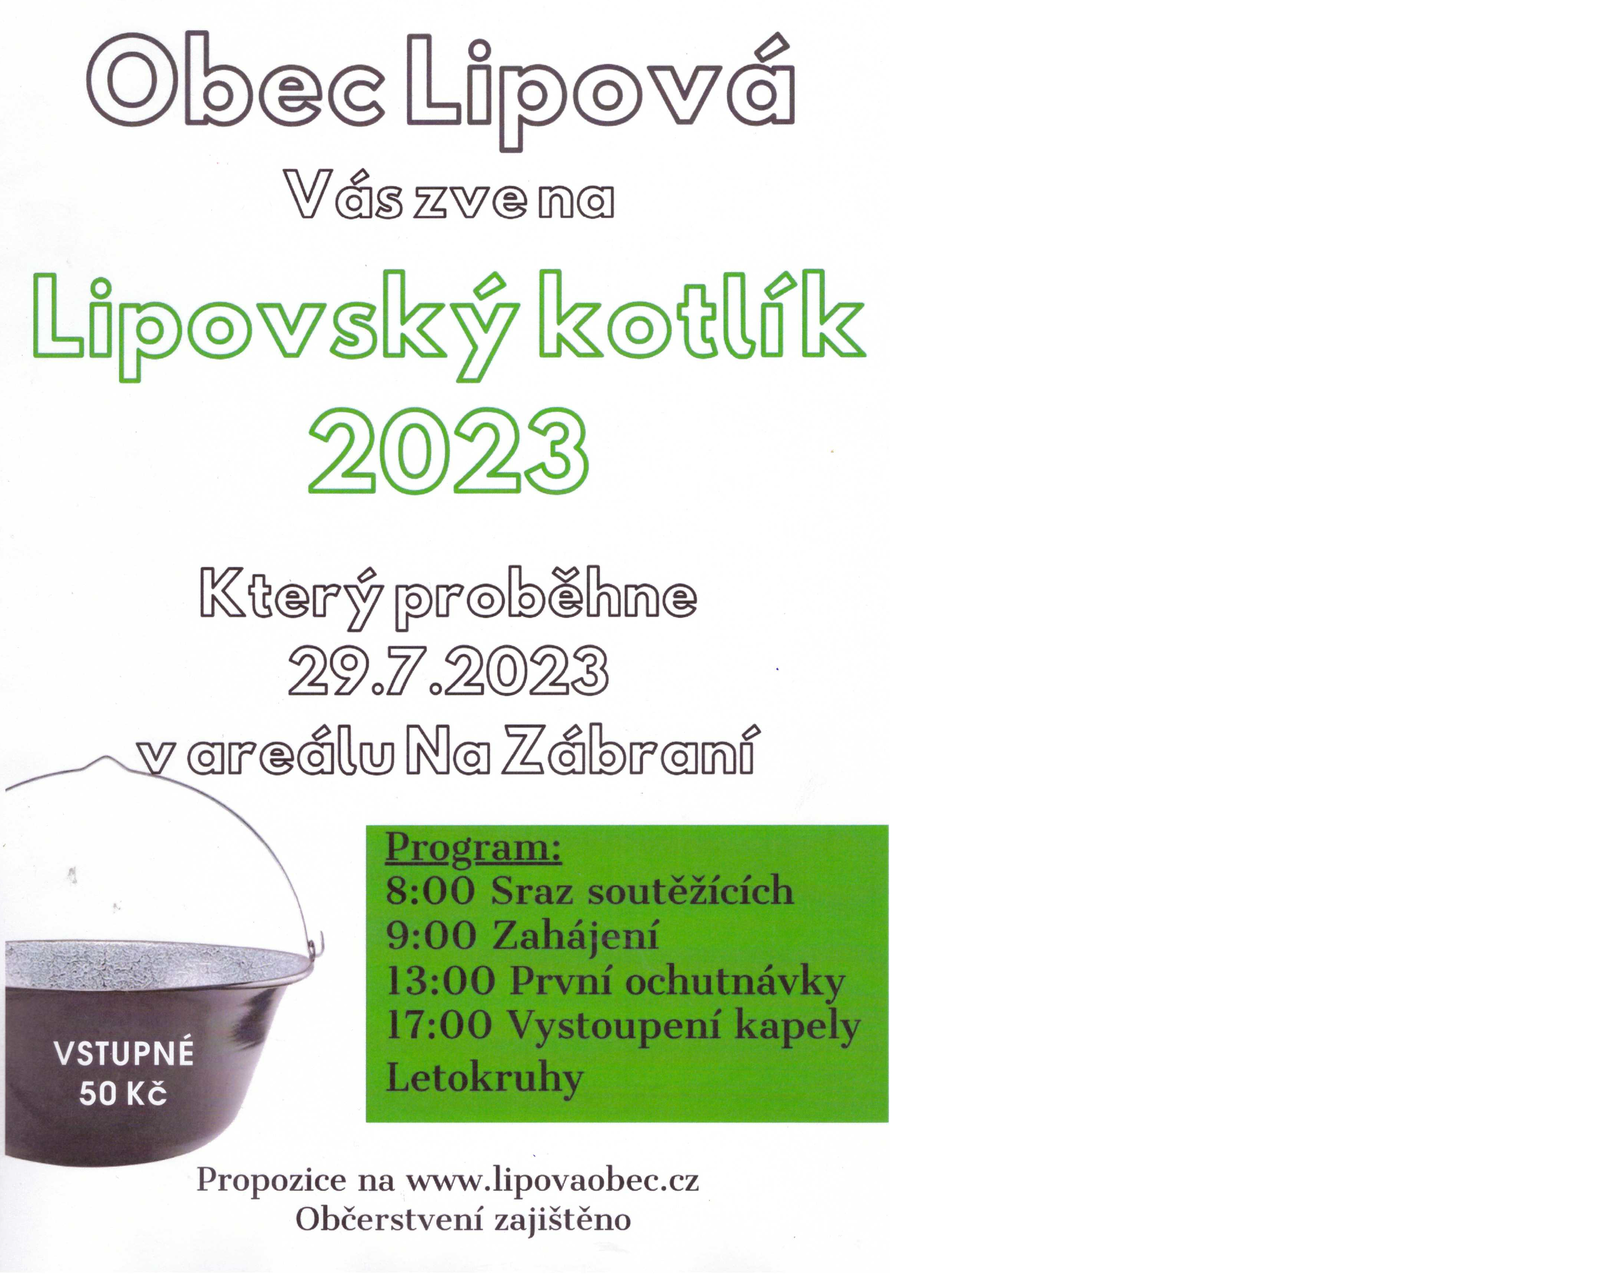 Lipovský kotlík 2023.png